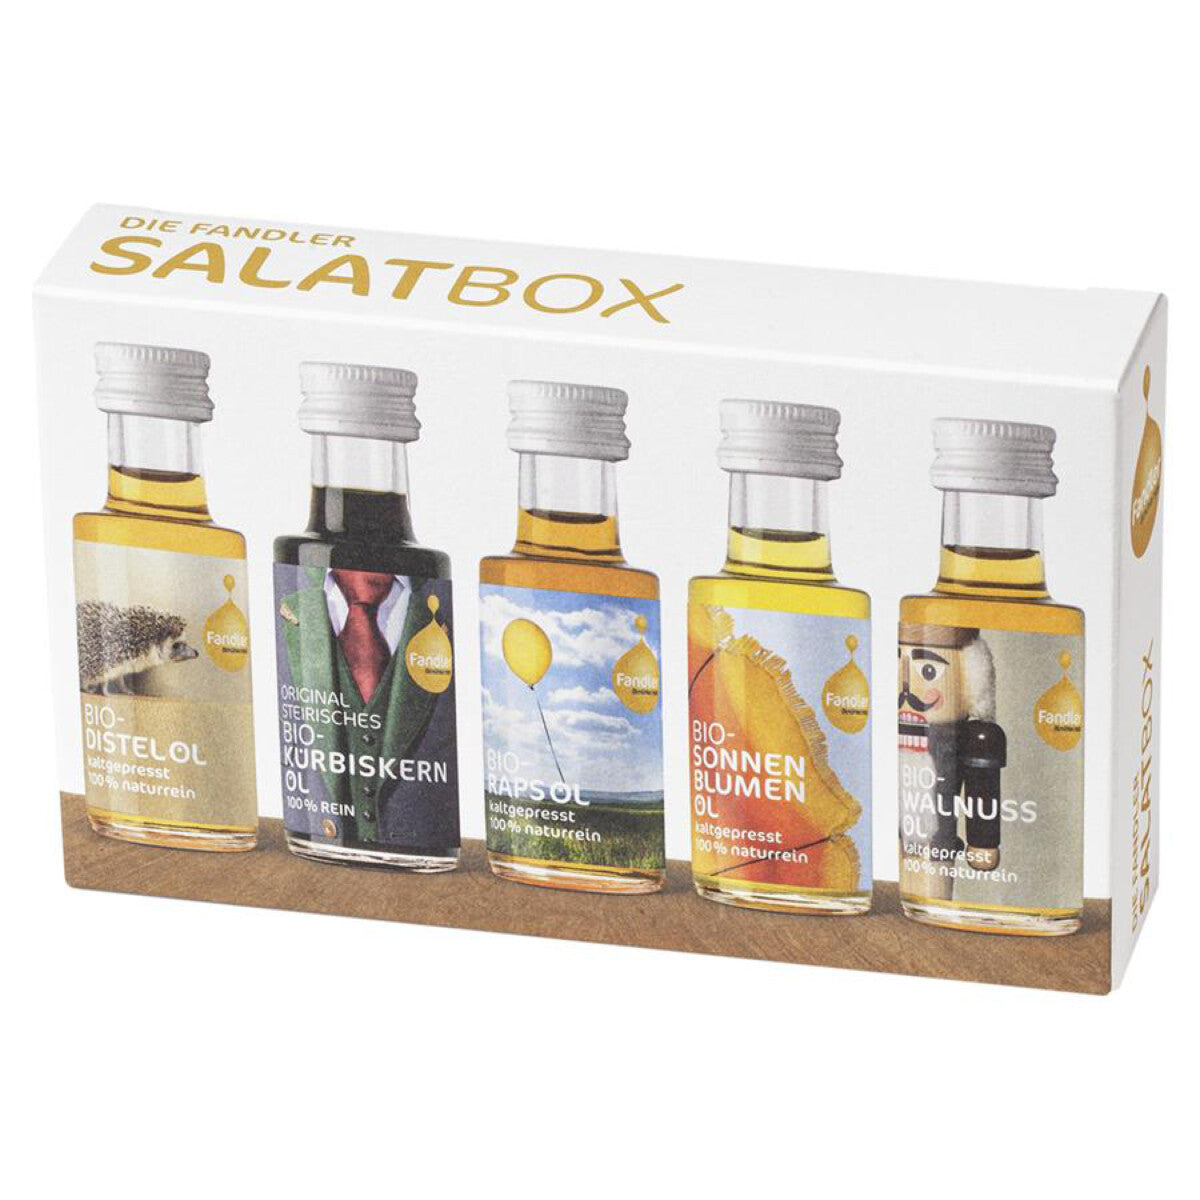 ÖLMÜHLE FANDLER Die Fandler Salatbox - 1 Box